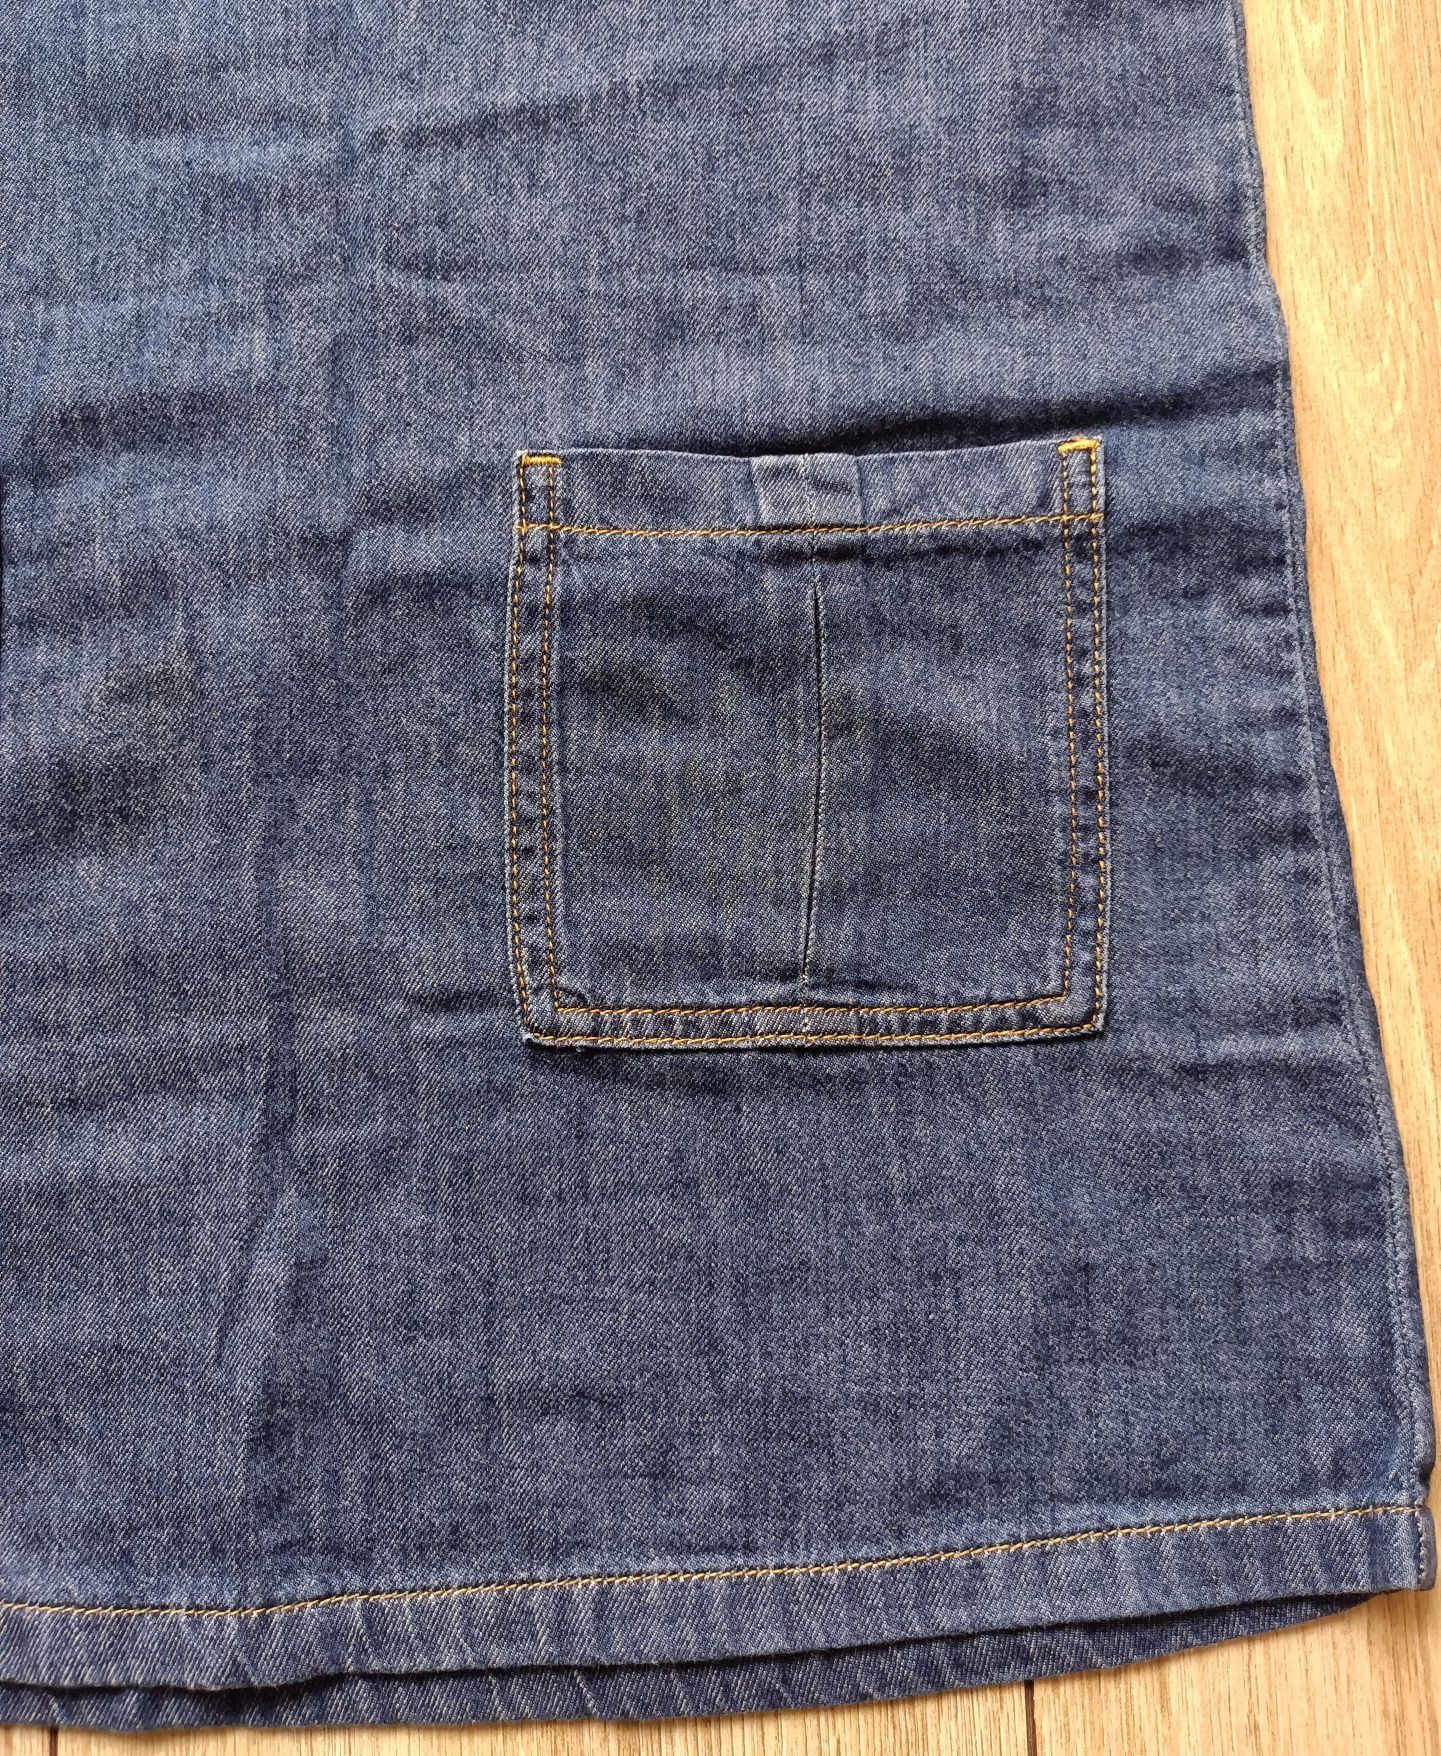 Next Sukienka jeansowa, kieszenie, r. 134 - 9 lat